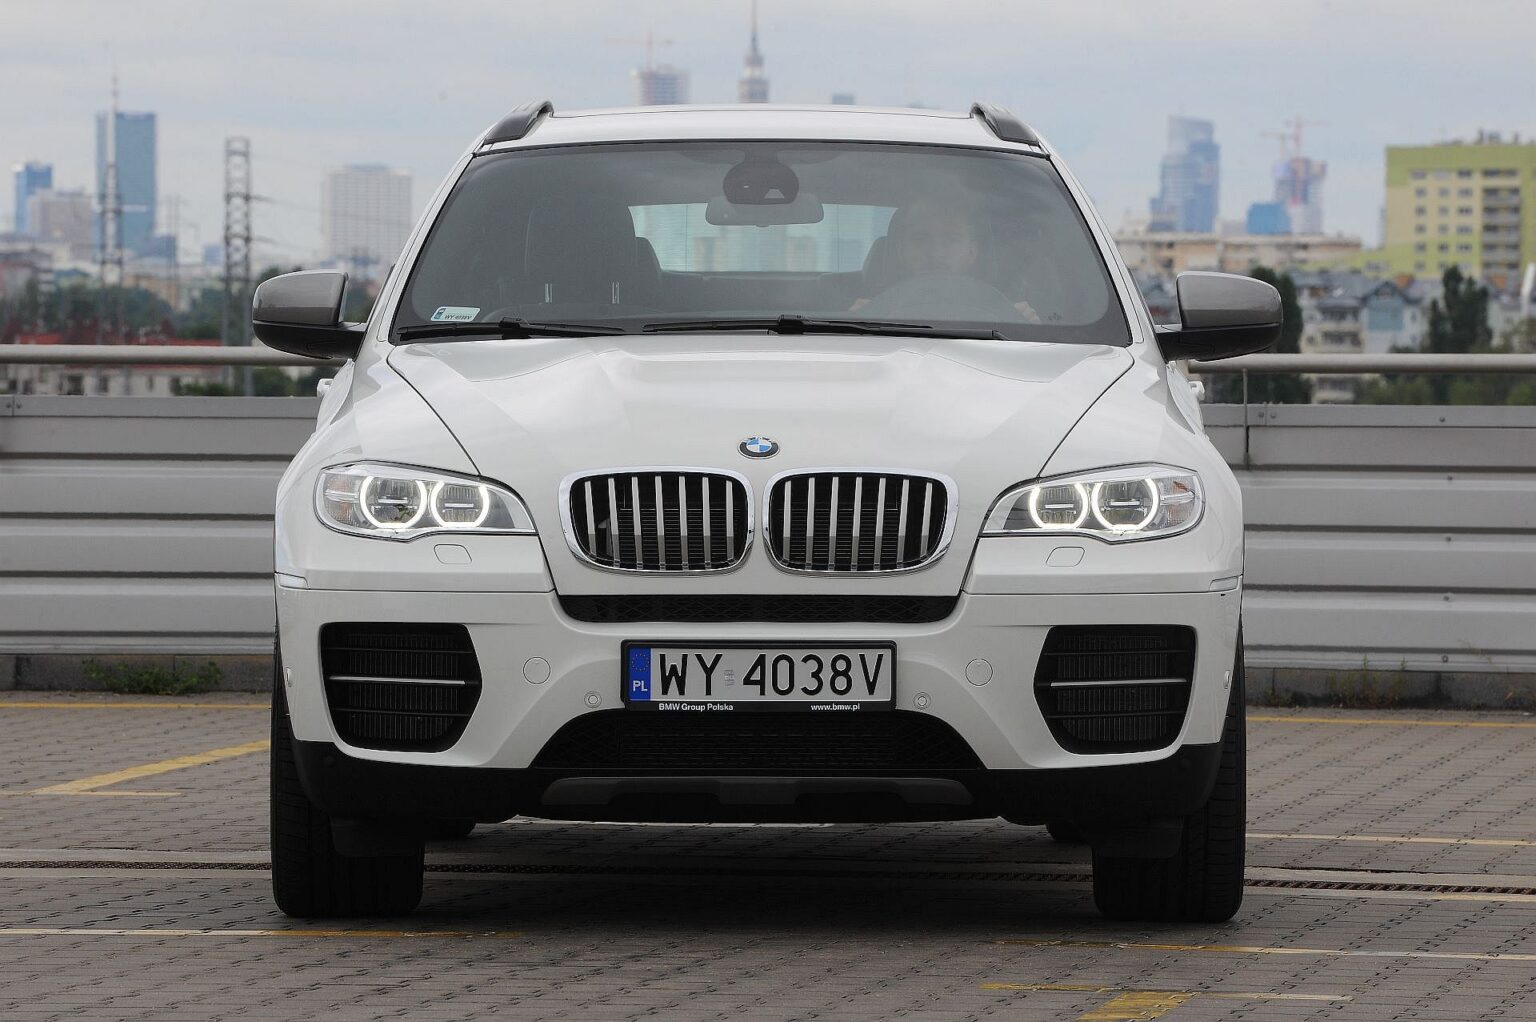 Używane BMW X6 I (E71; 20082014) opinie, dane